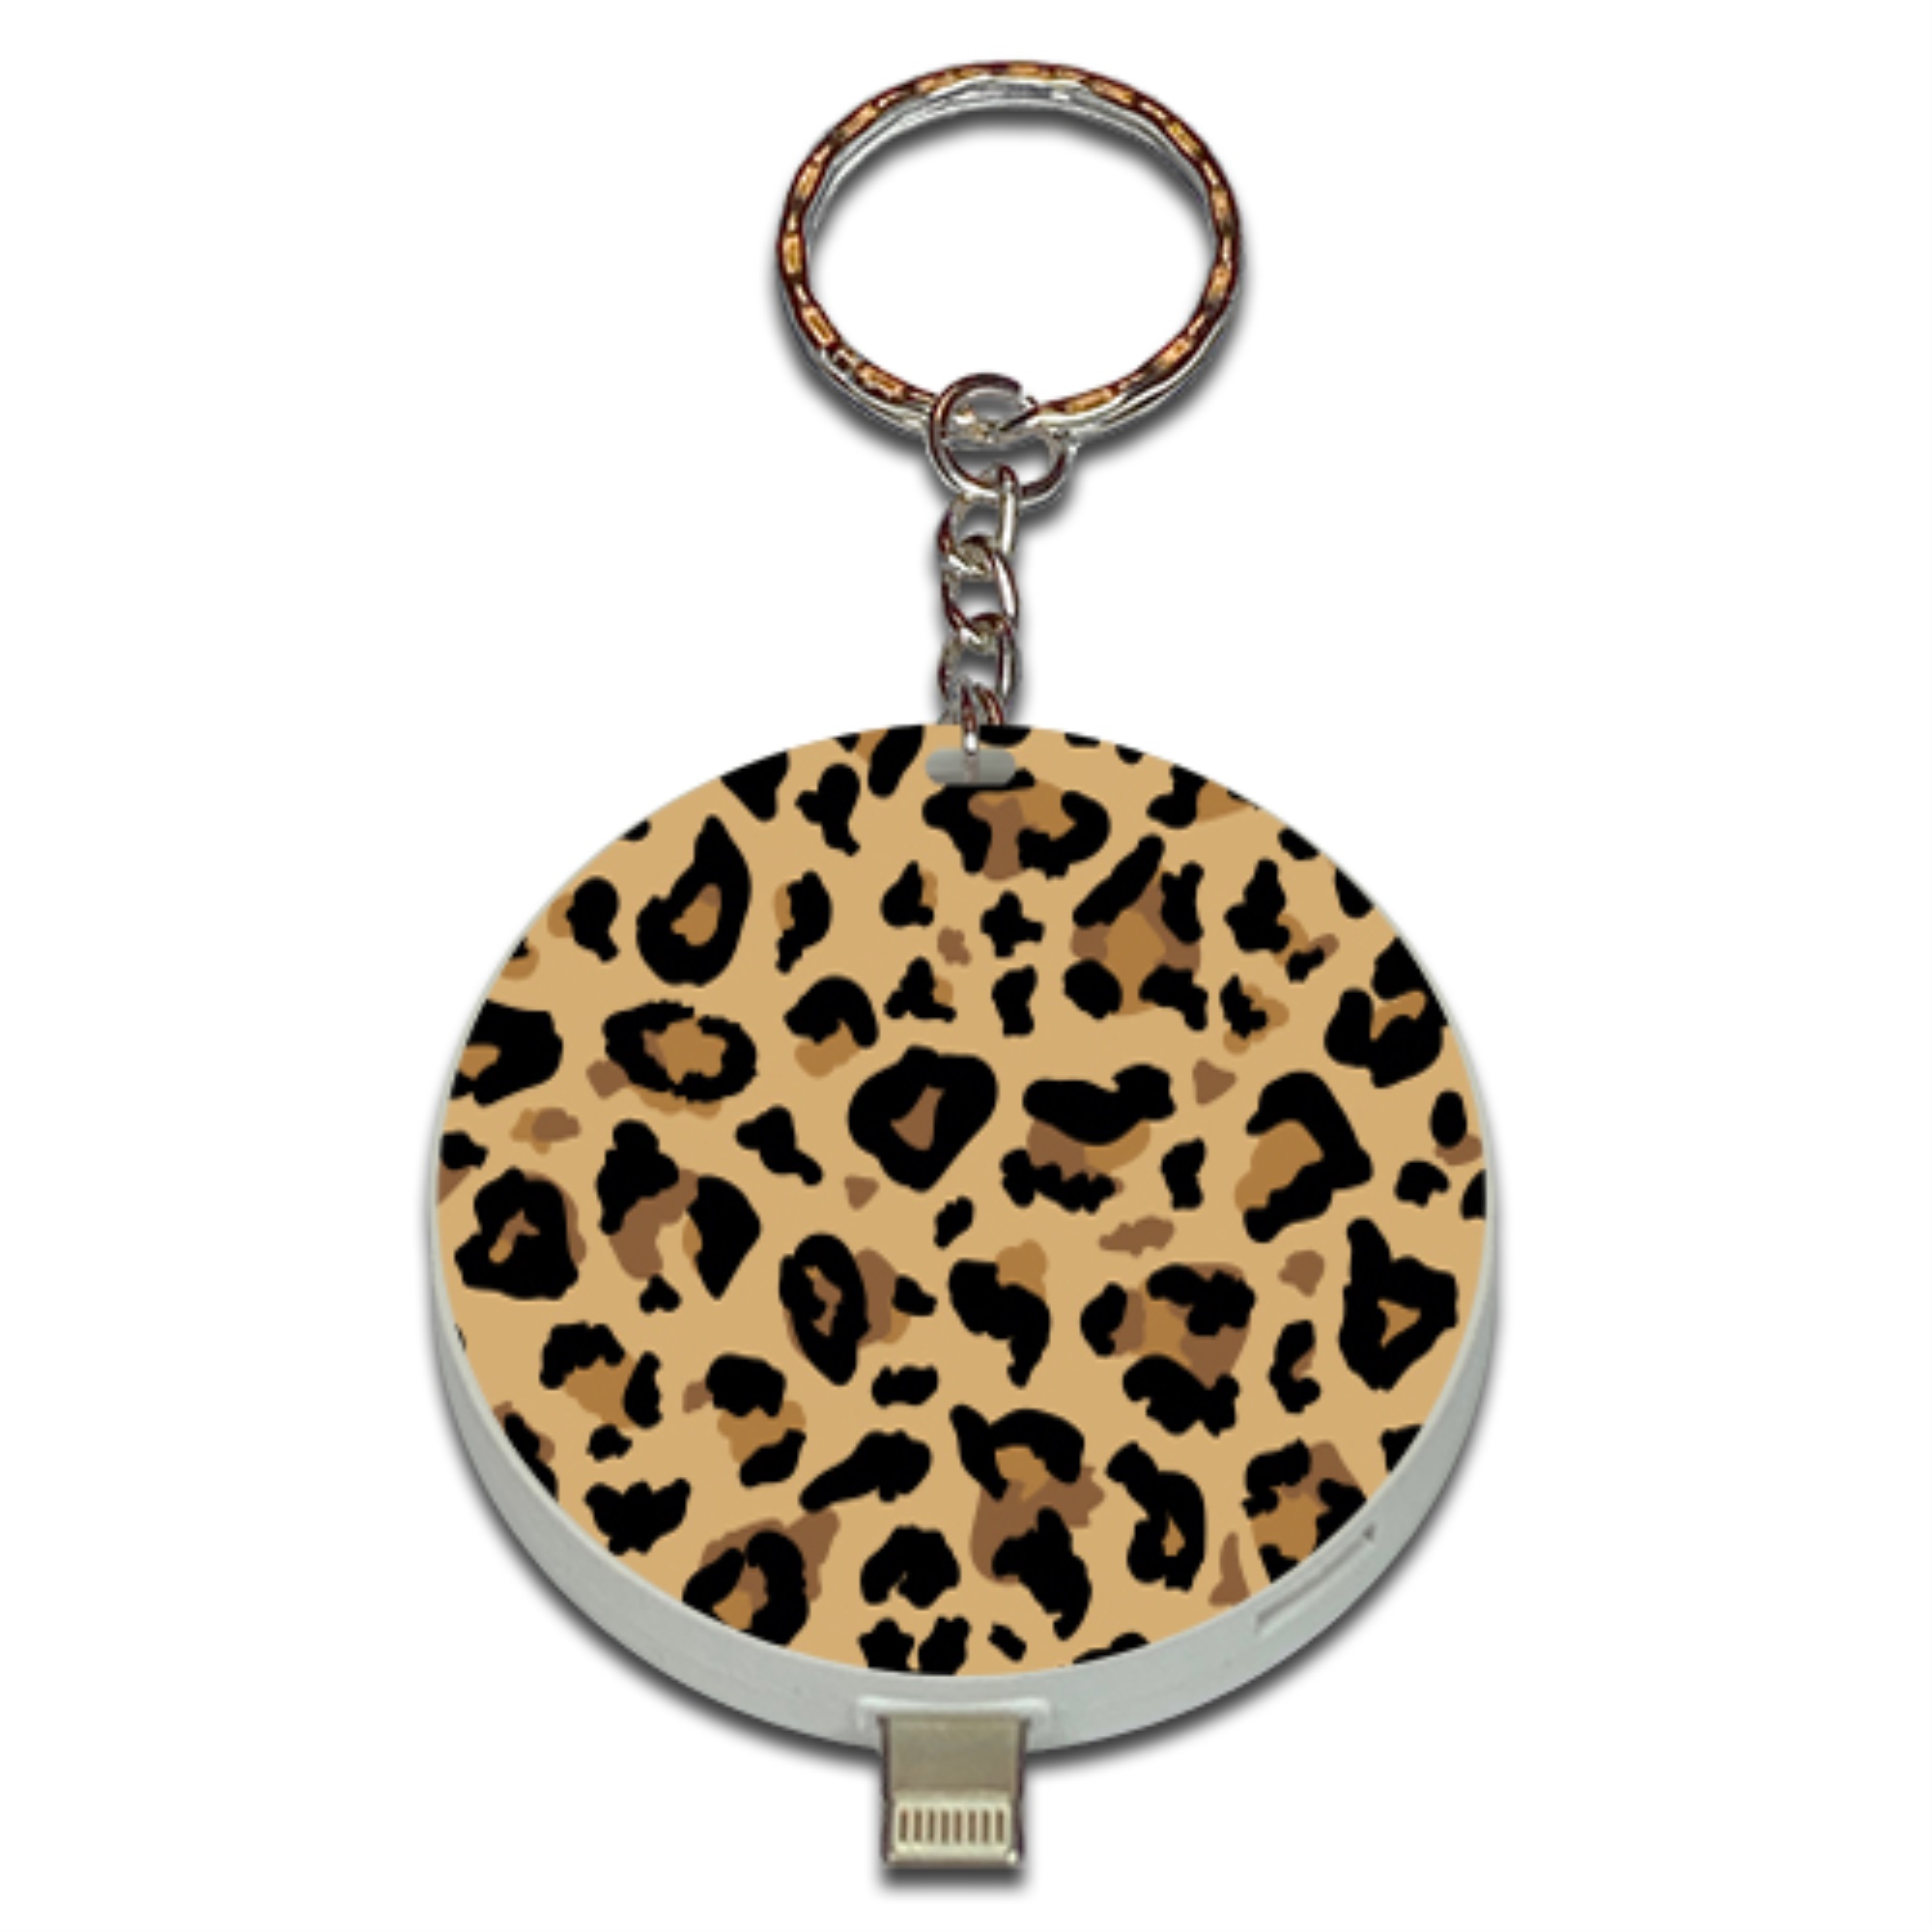 UPLUG Cheetah Print Charger Power Bank Key-Chain